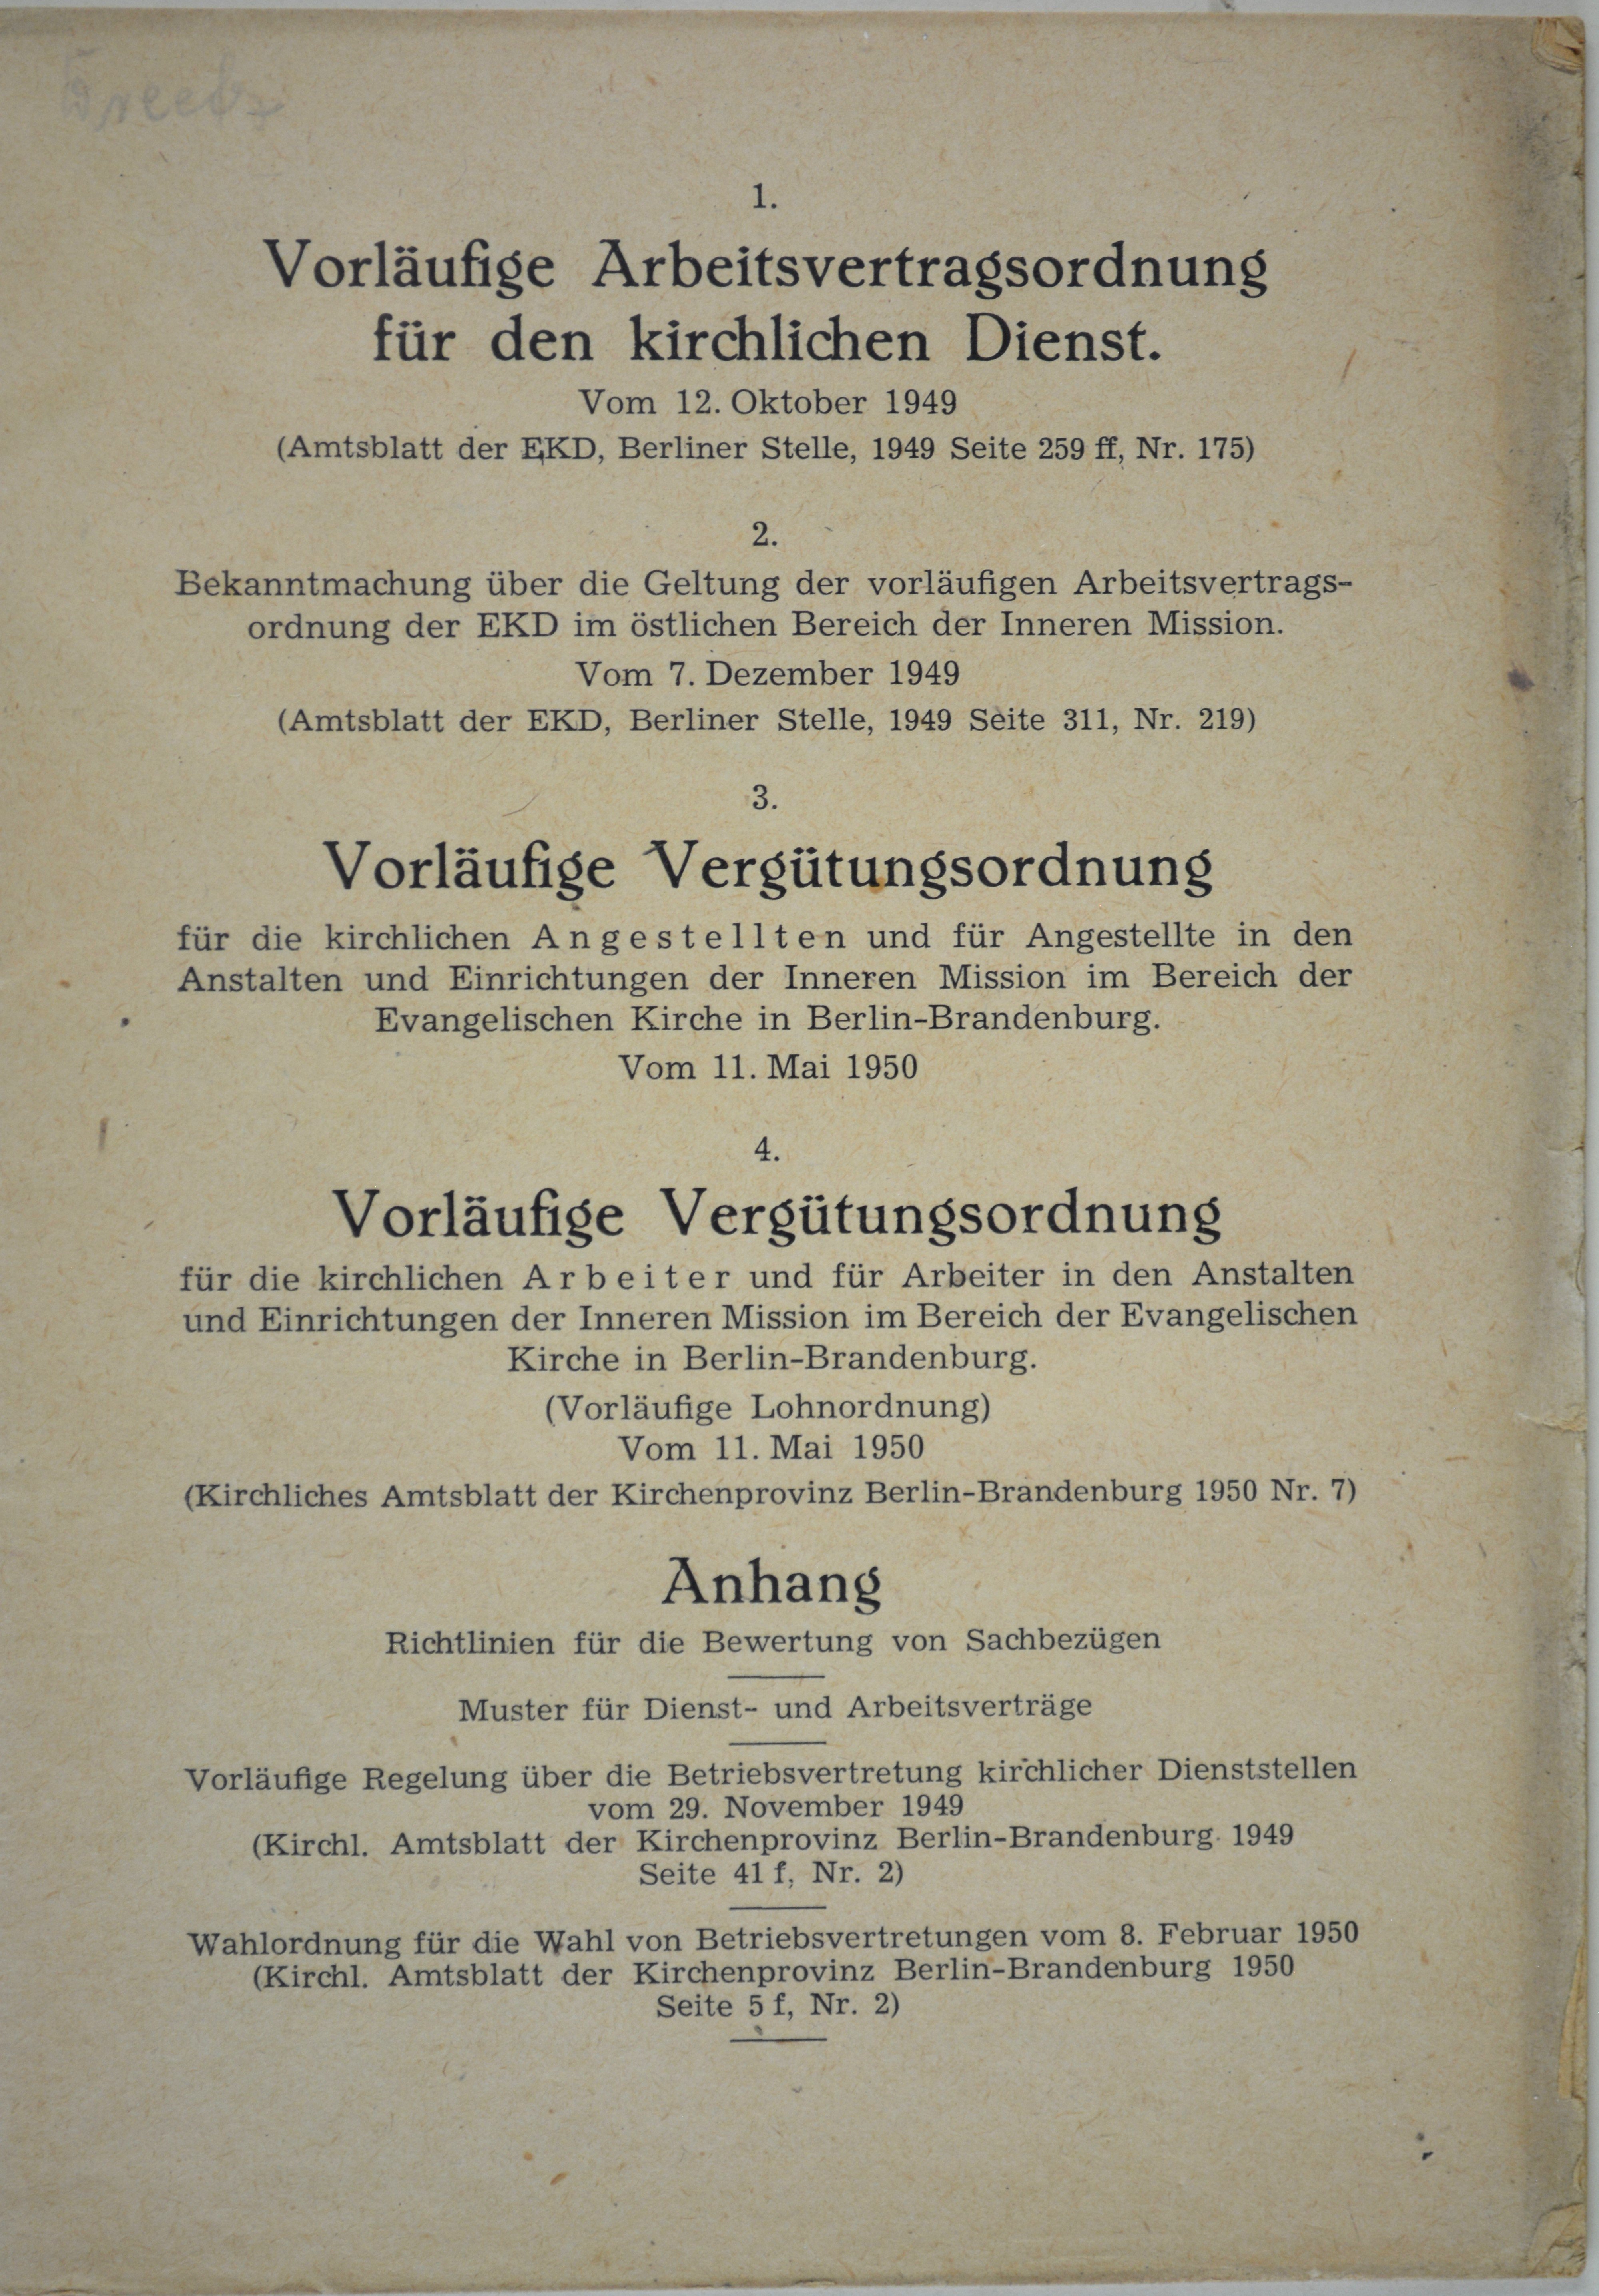 Broschüre: Vorläufige Arbeitsvertragsordnung für den kirchlichen Dienst vom 12. Oktober 1949 (DDR Geschichtsmuseum im Dokumentationszentrum Perleberg CC BY-SA)